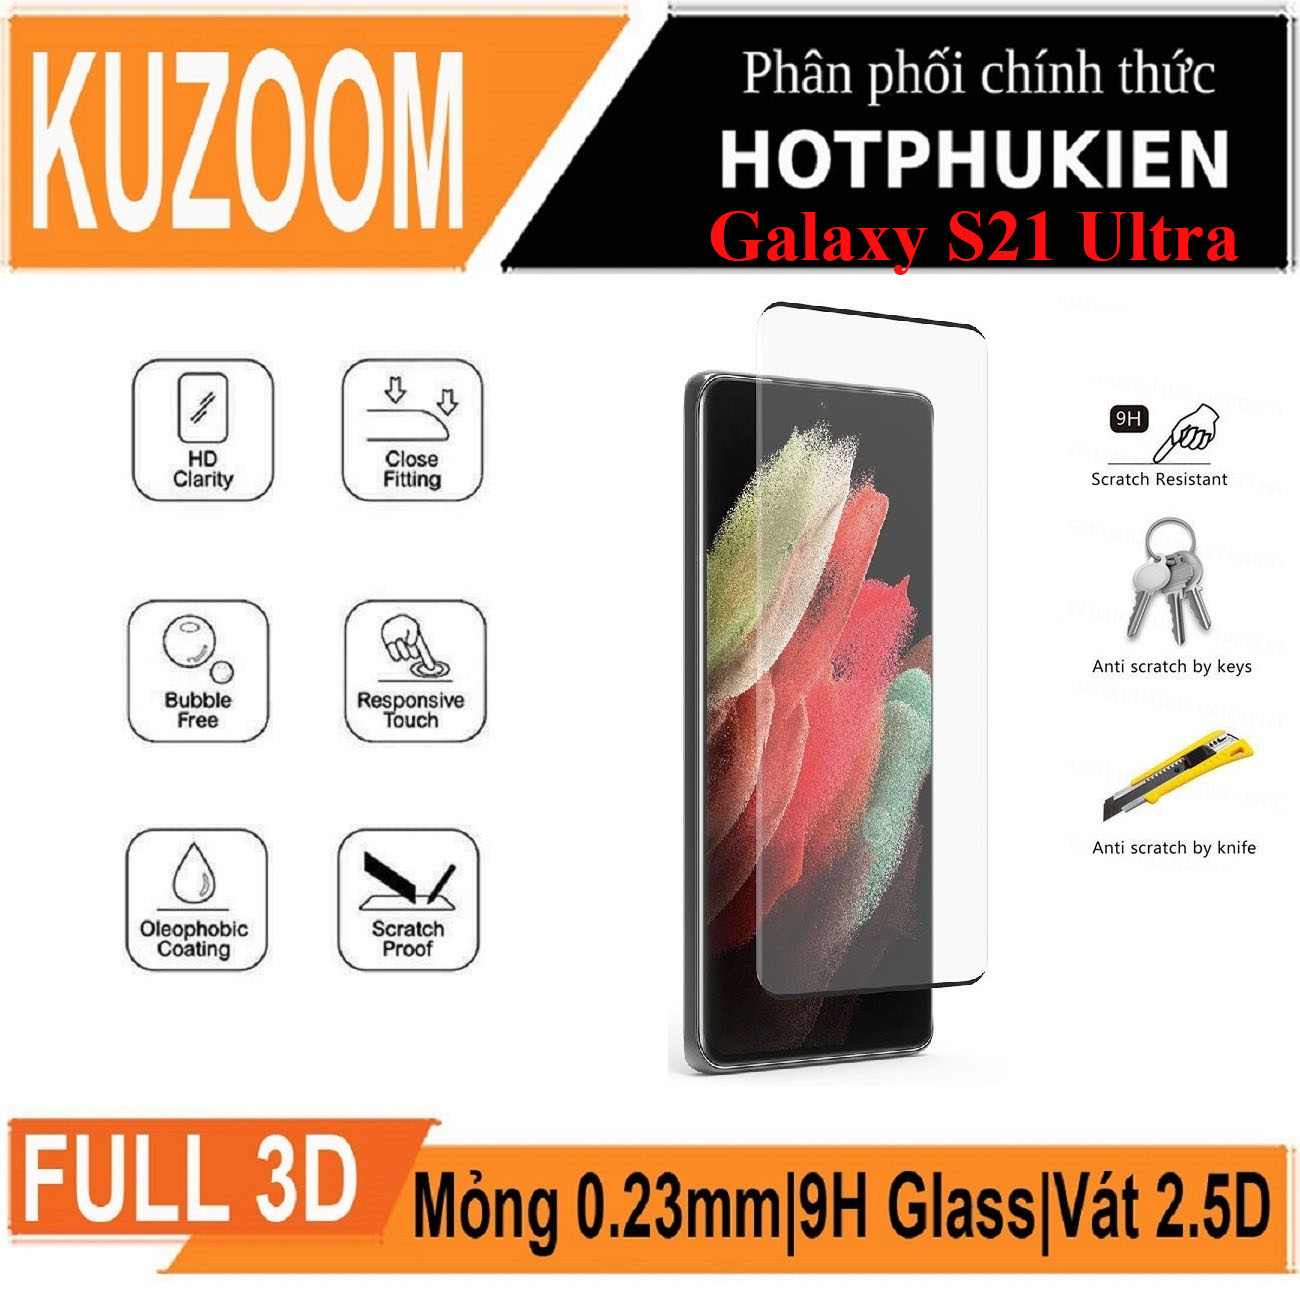 Miếng dán kính cường lực 3D cho Samsung Galaxy S21 Ultra hiệu Kuzoom Protective Glass - mỏng 0.3mm, vát cạnh 2.5D, độ cứng 9H, viền cứng mỏng